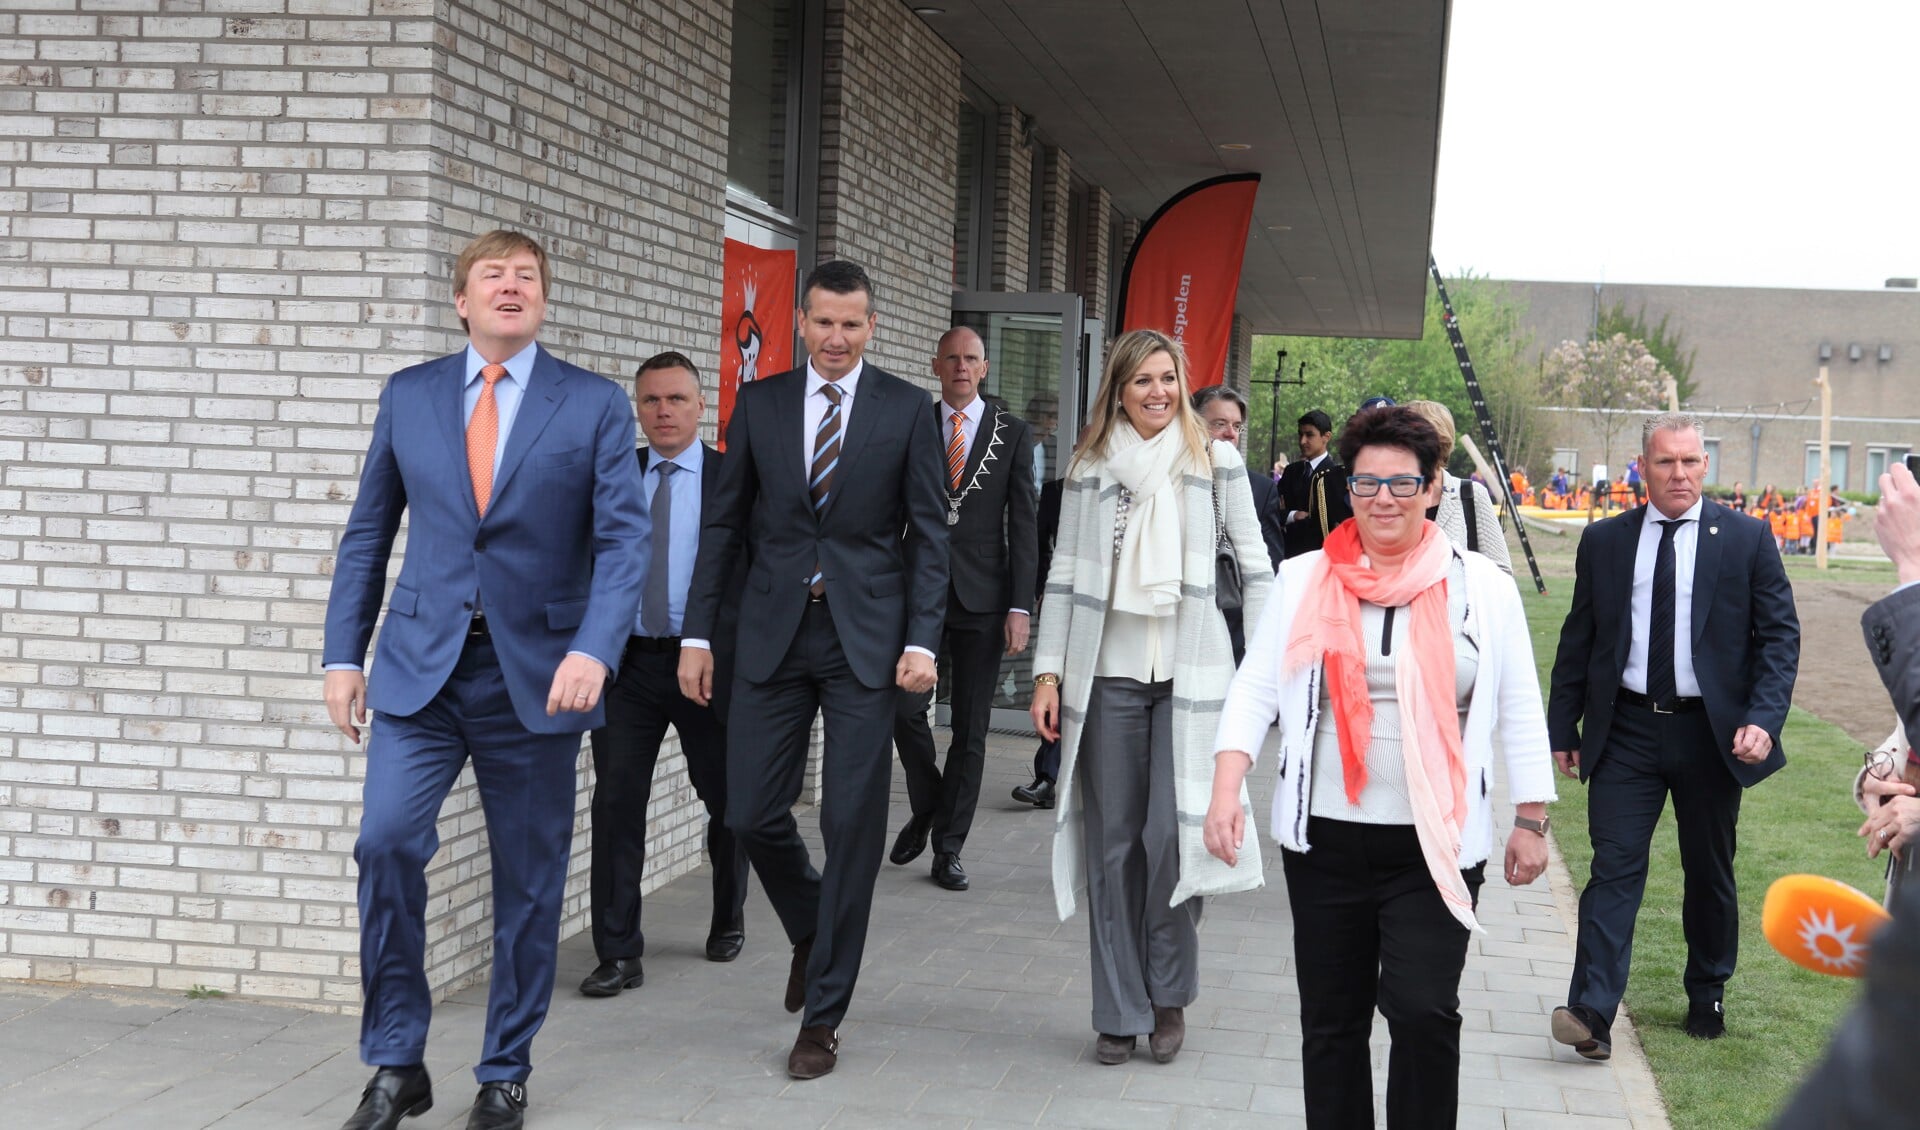 Koning Willem-Alexander, Richard Krajicek, Koningin Máxima en Ellen Vos. Op de achtergrond burgemeester Fränzel en Wim van de Donk.